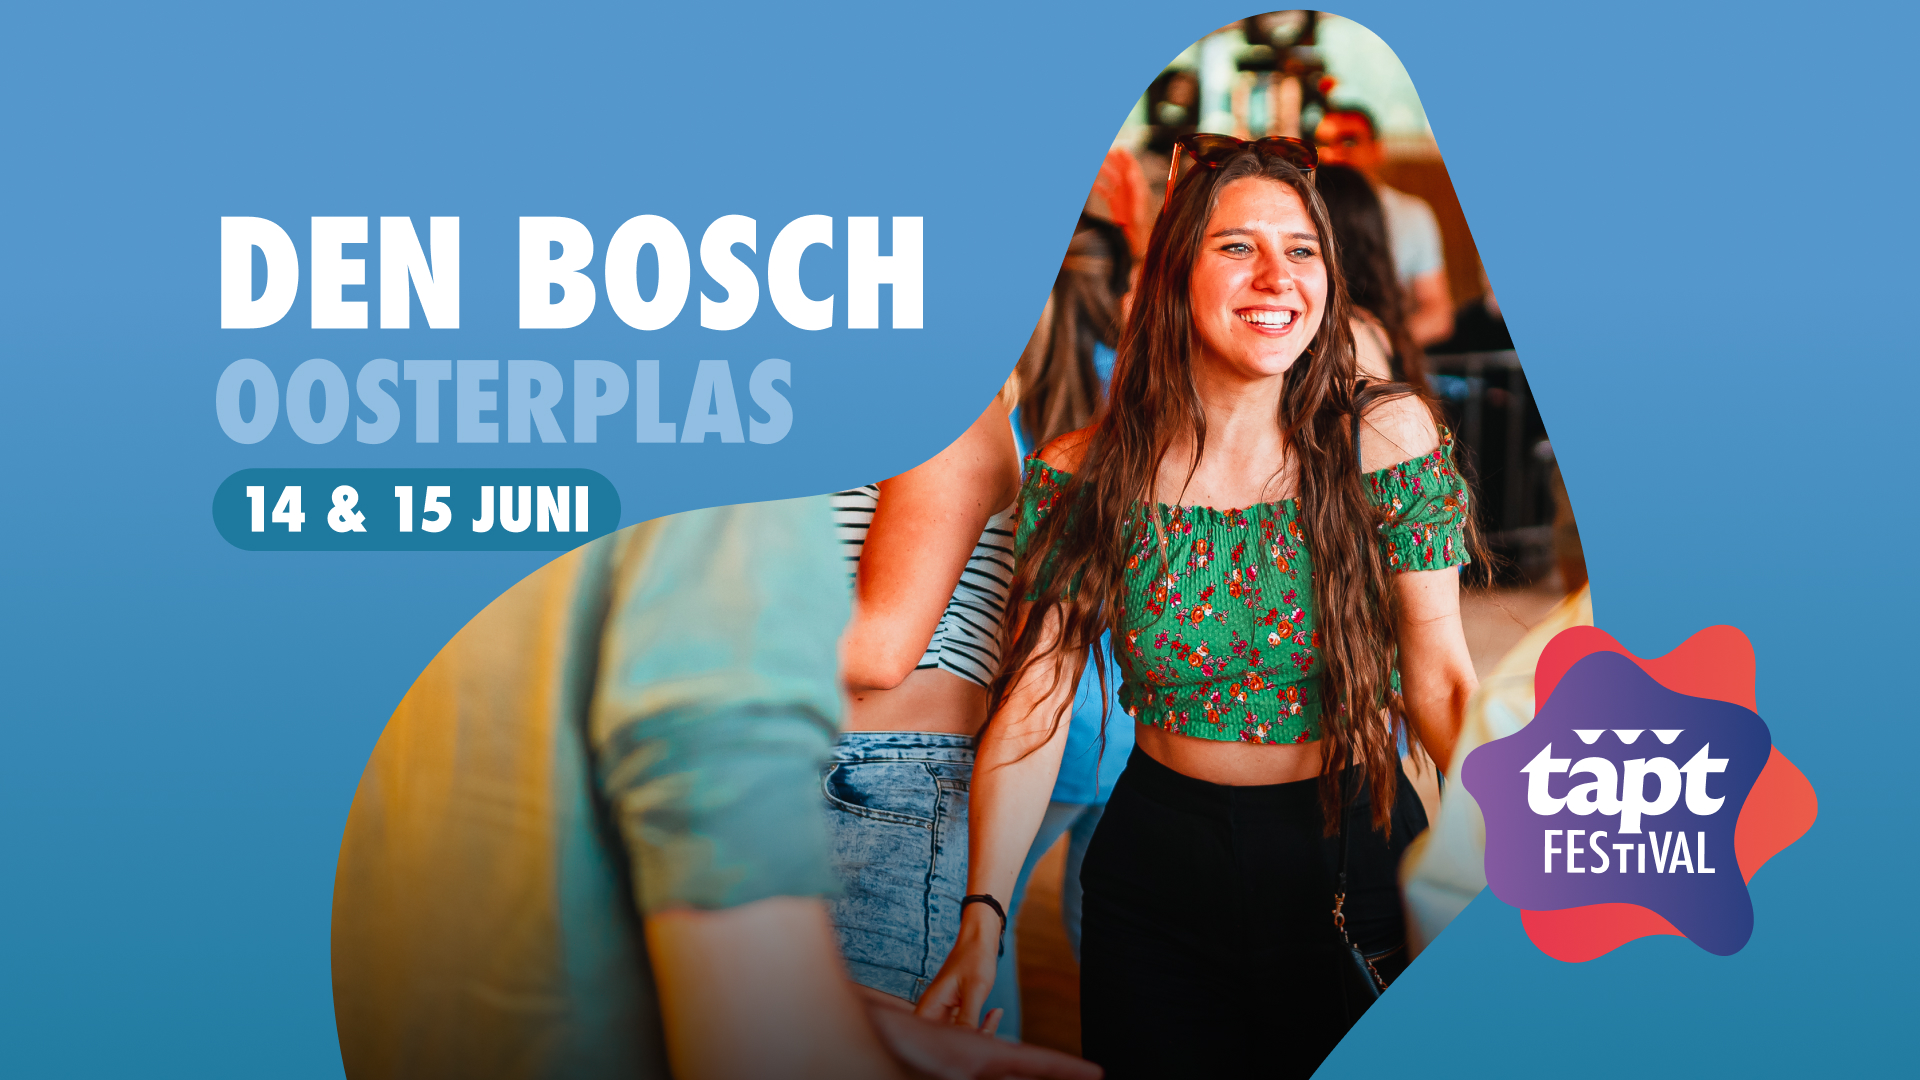 TAPT Festival Den Bosch